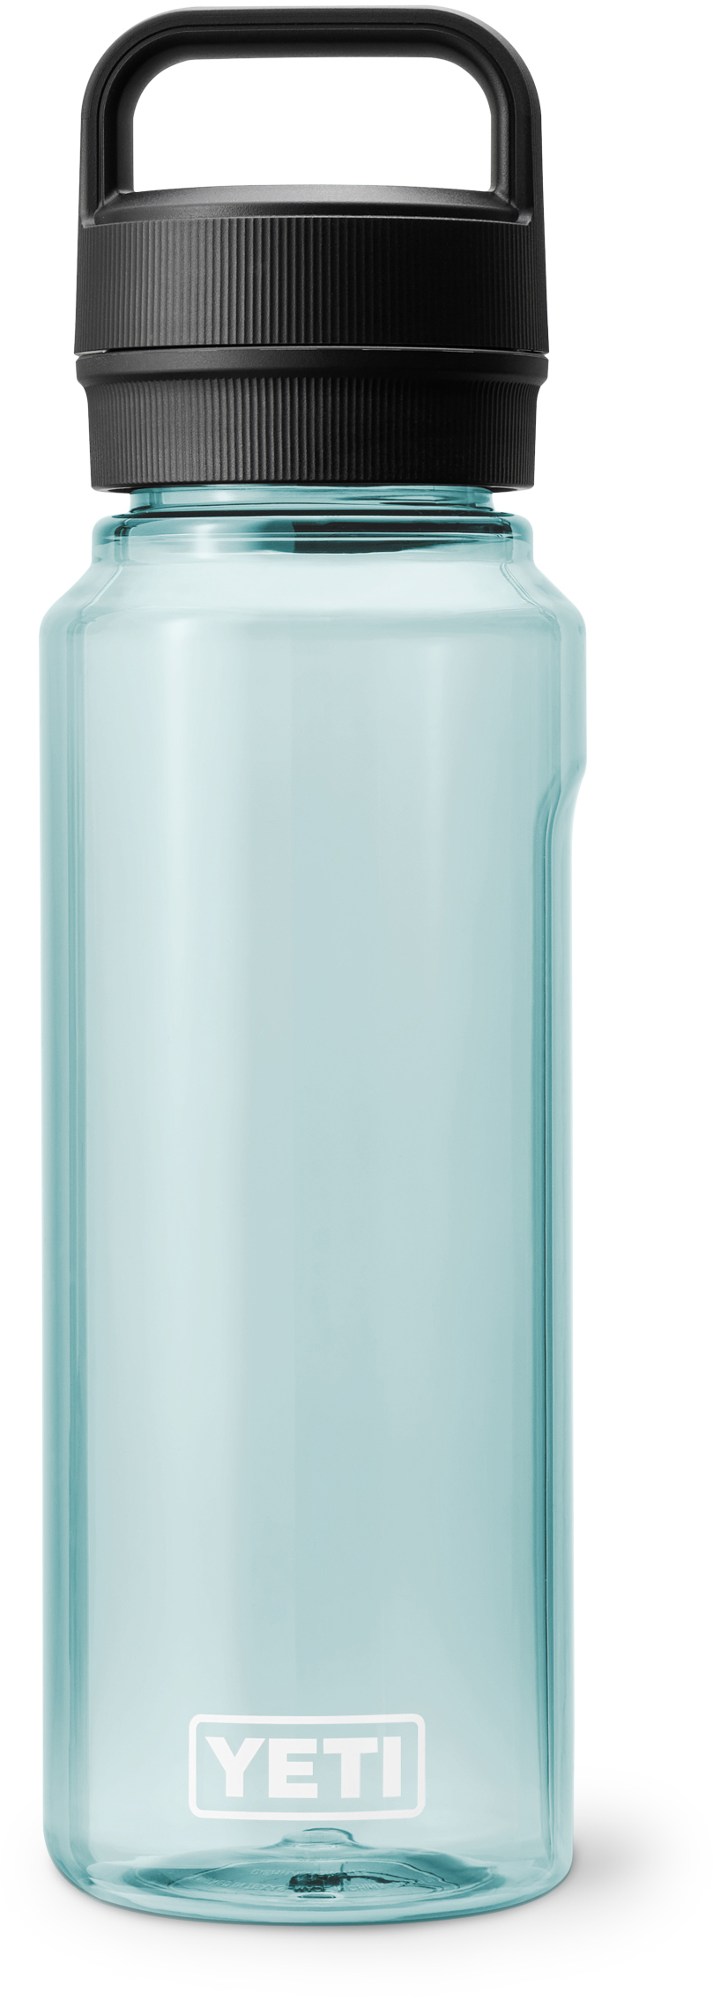 Бутылка для воды Yonder с крышкой Yonder Chug - 34 эт. унция YETI, зеленый бутылка contigo chug 0 72л бордовый пластик 2095089